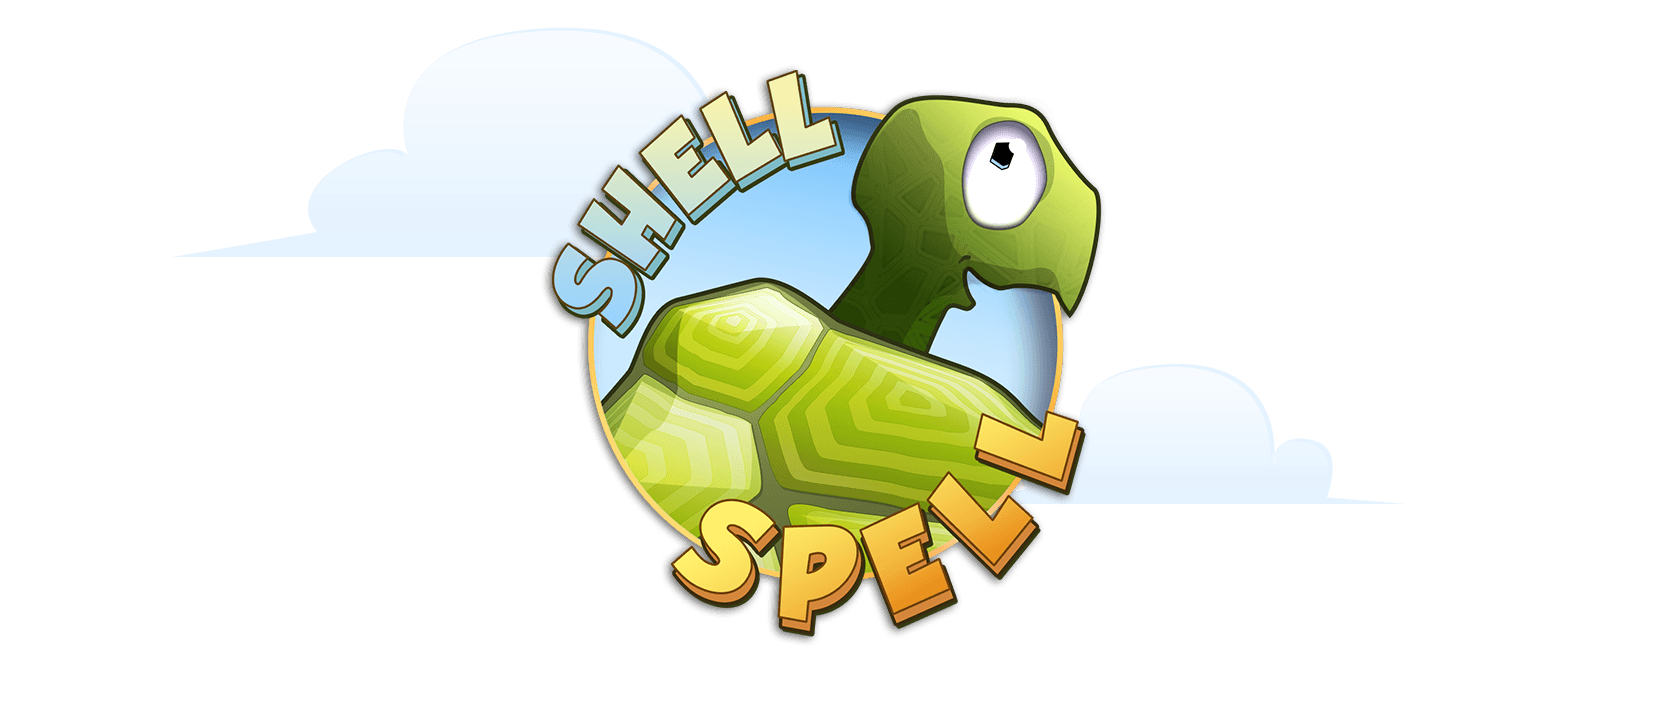 Shell Spell